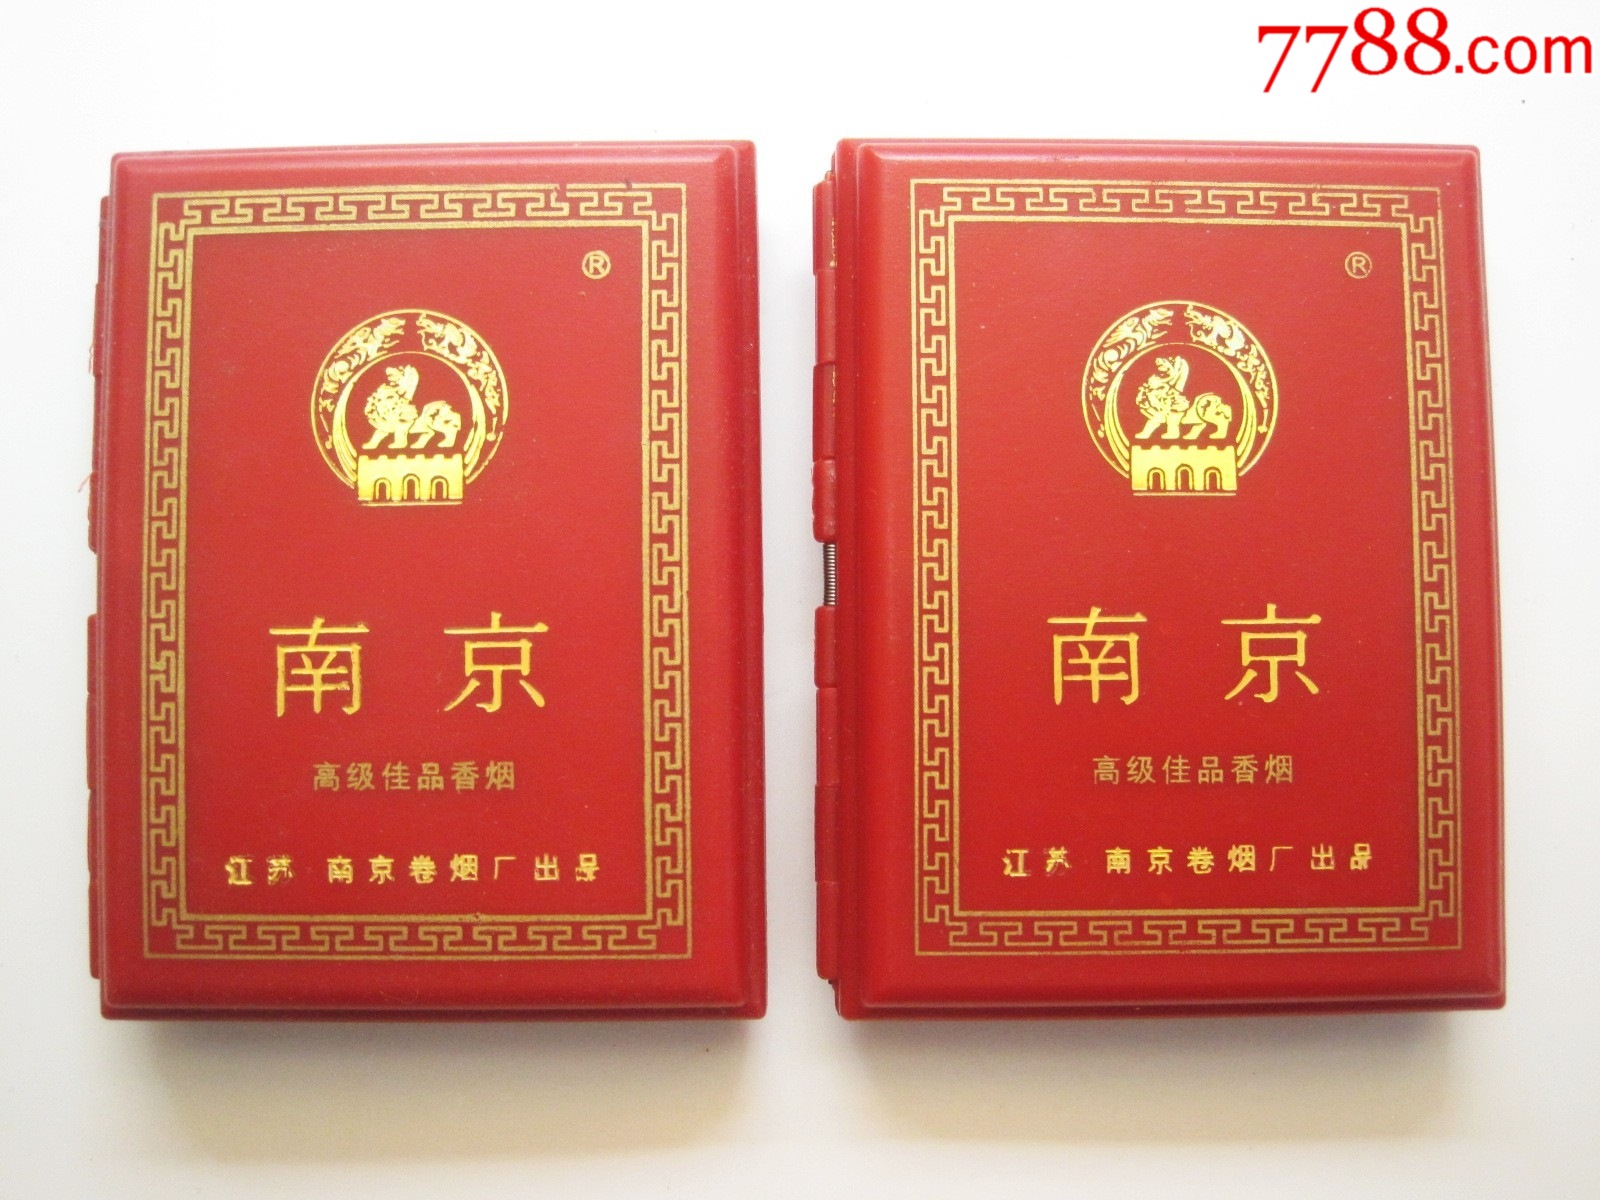 金圣中国红16支装价格图片